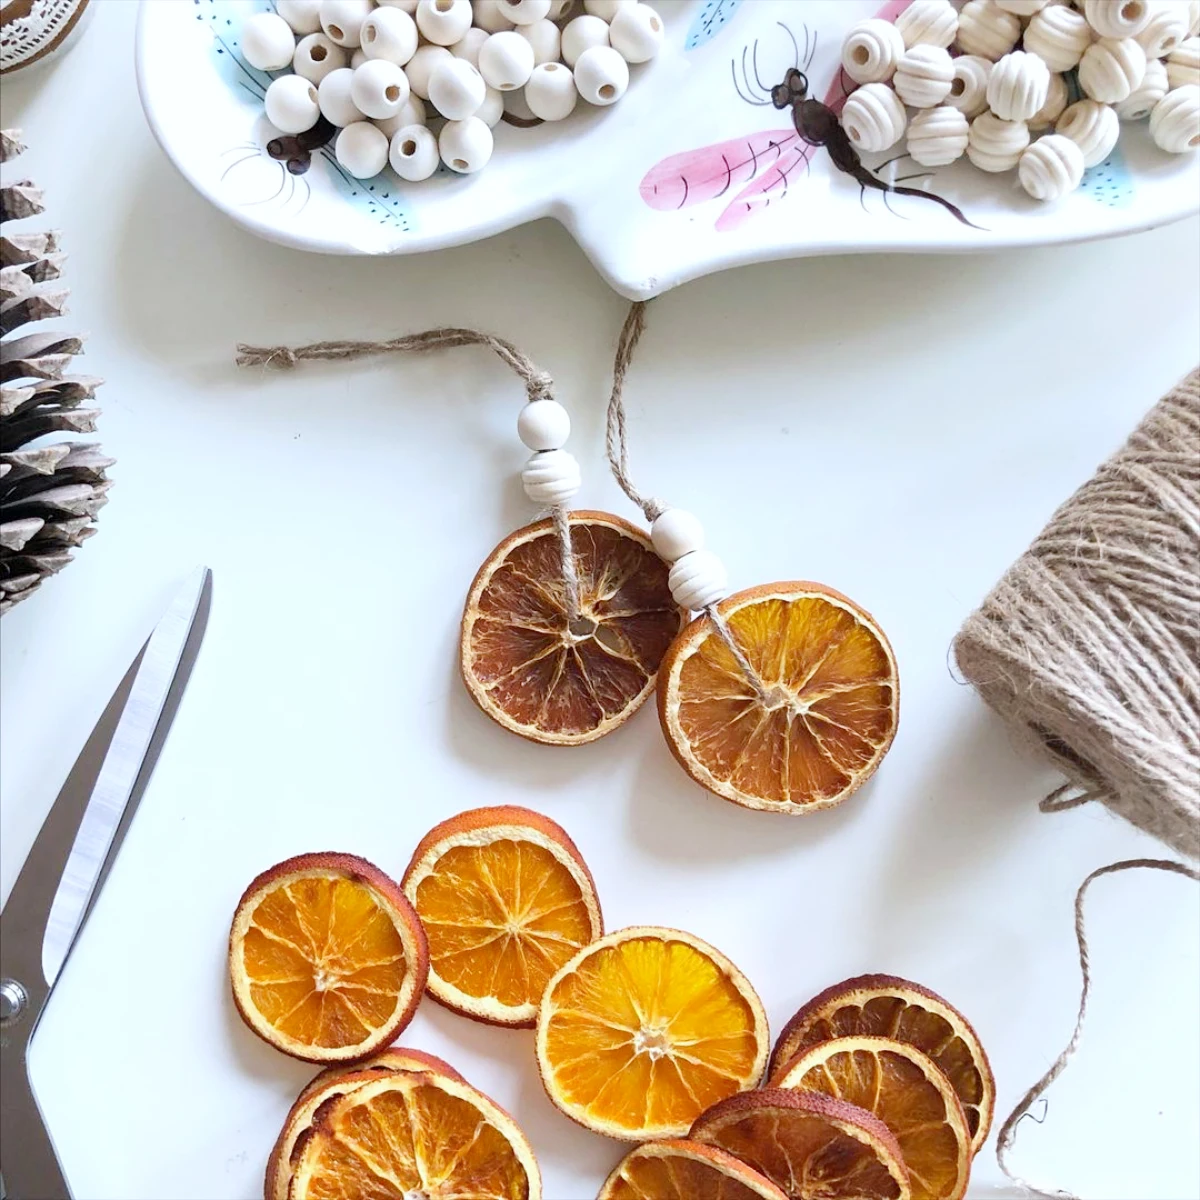 idees de deco de noel avec des tranches d orange sechees et perles de bois